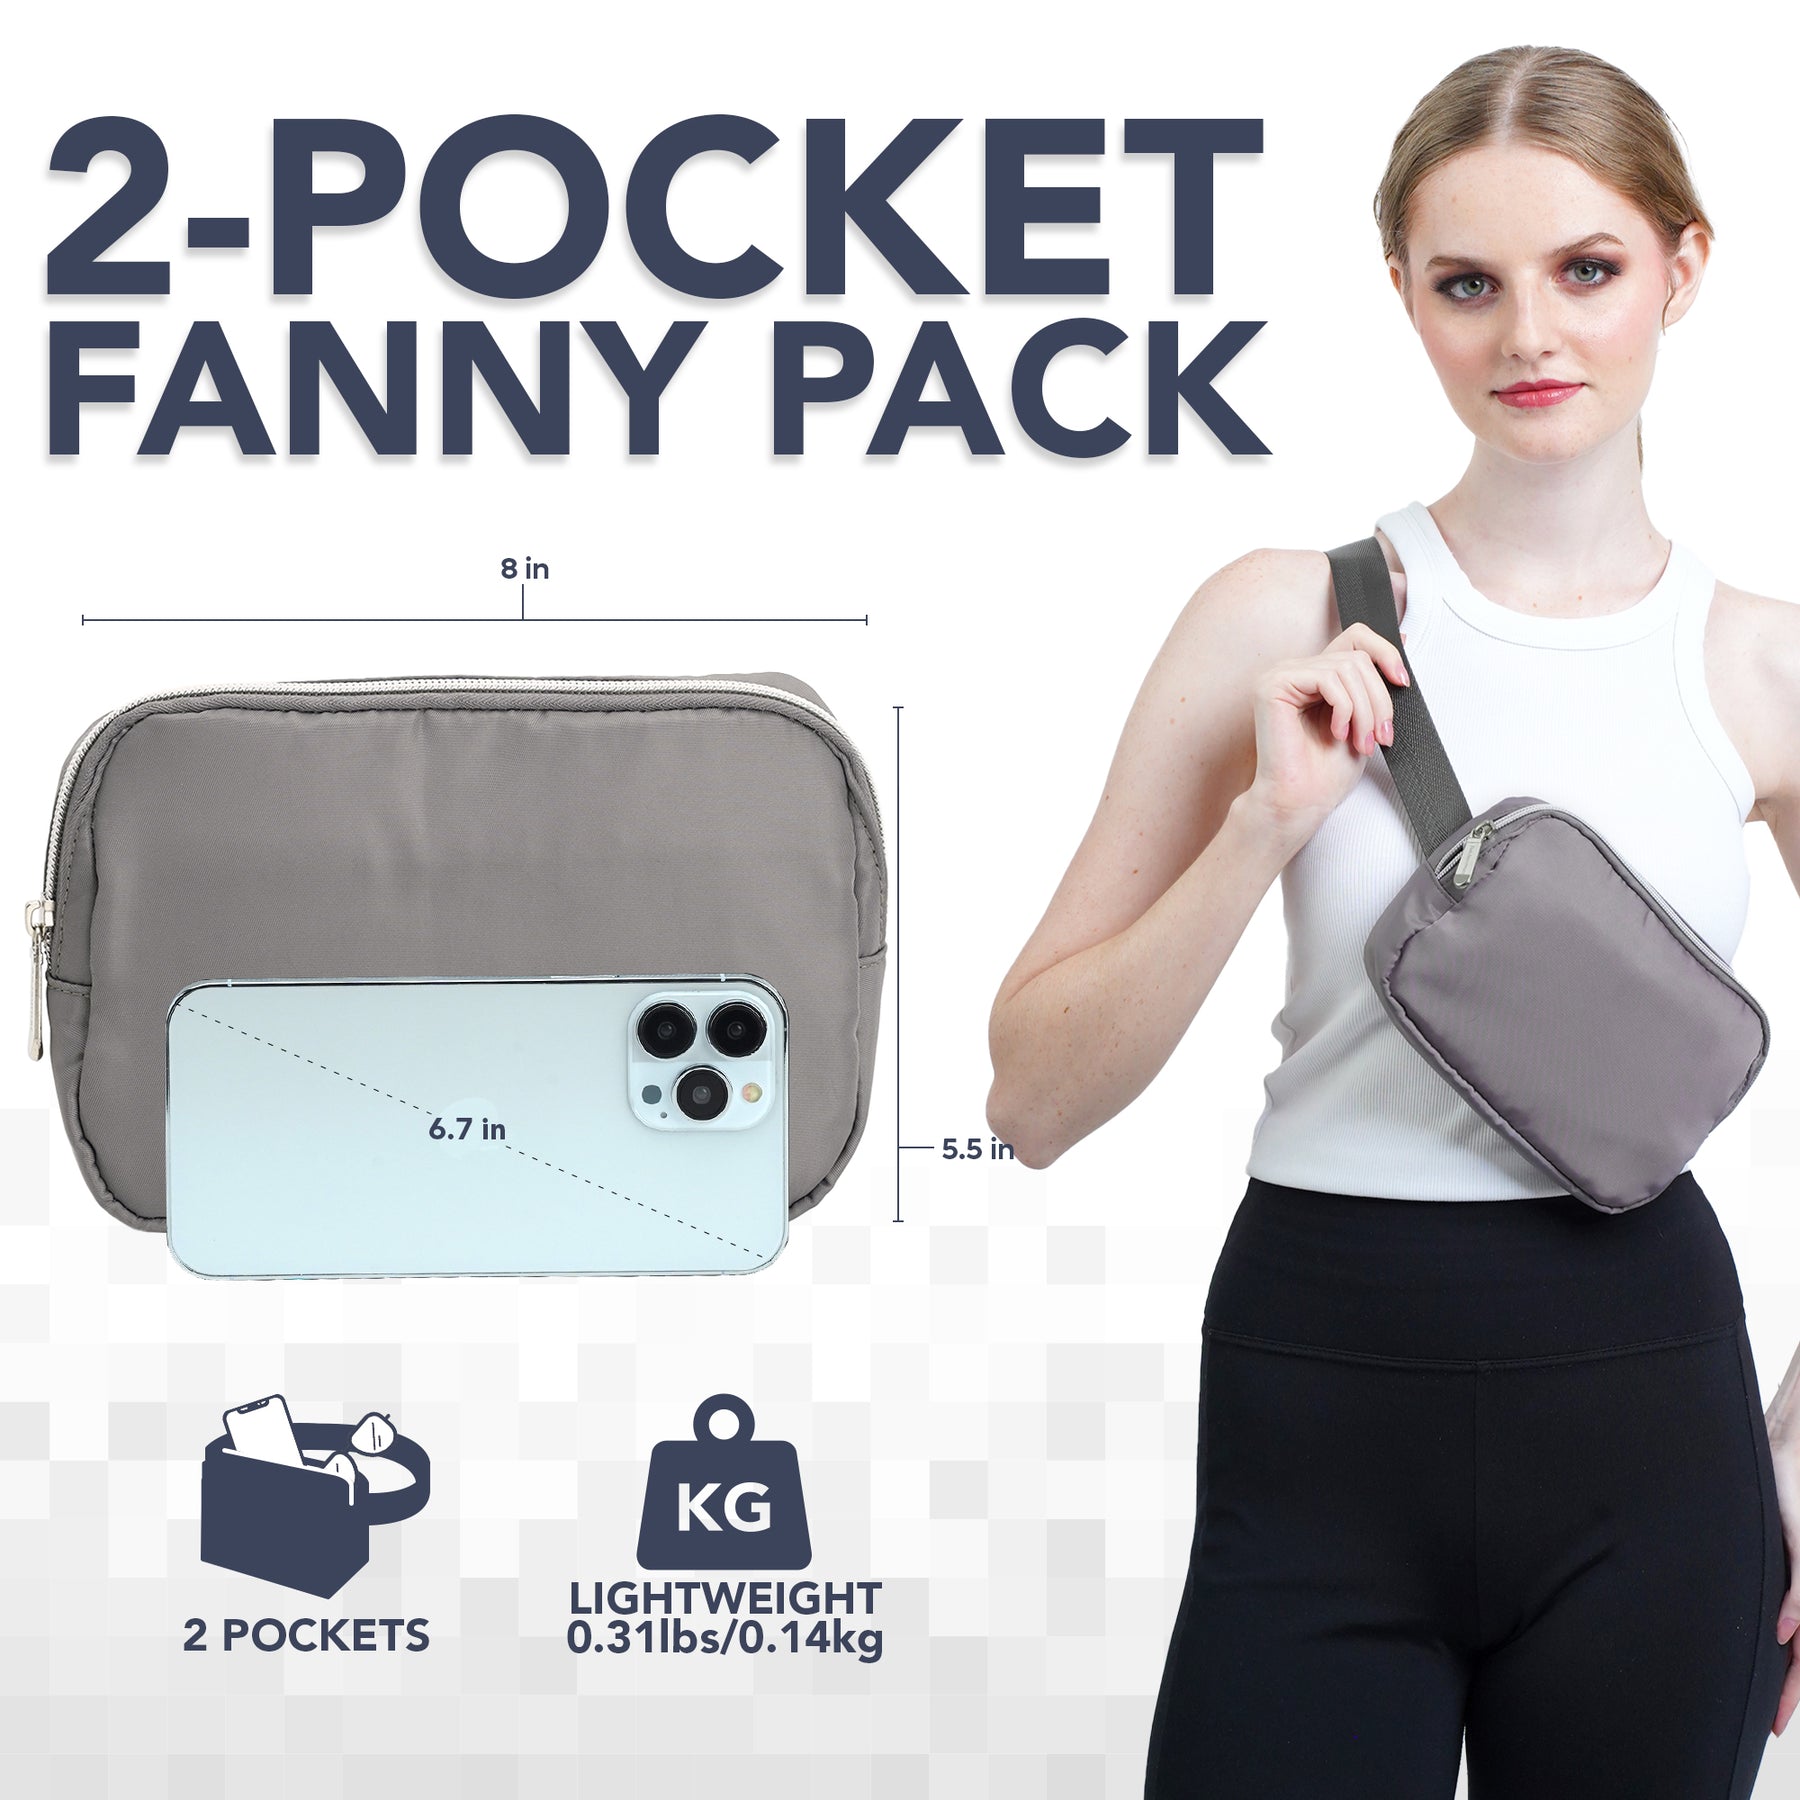 Gray Fanny Pack Belt Bag for Women I Cross Body Fanny Packs for Women - Crossbody Bags small Waist Bag Men